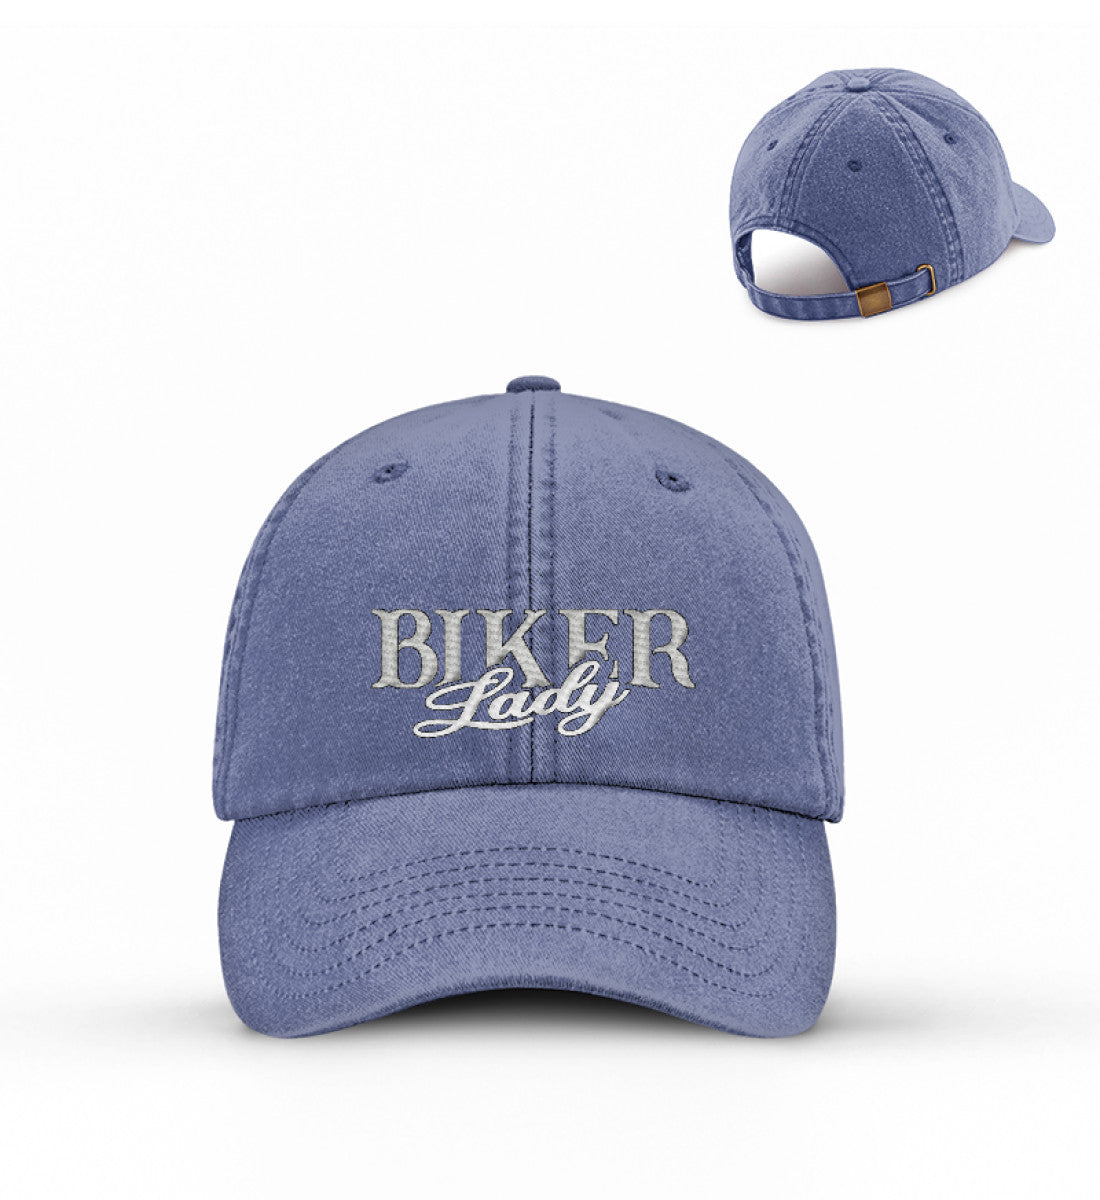 Eine Bikerin Cappy für Motorradfahrerinnen von Wingbikers mit dem Stick, Biker Lady, in vintage blau.